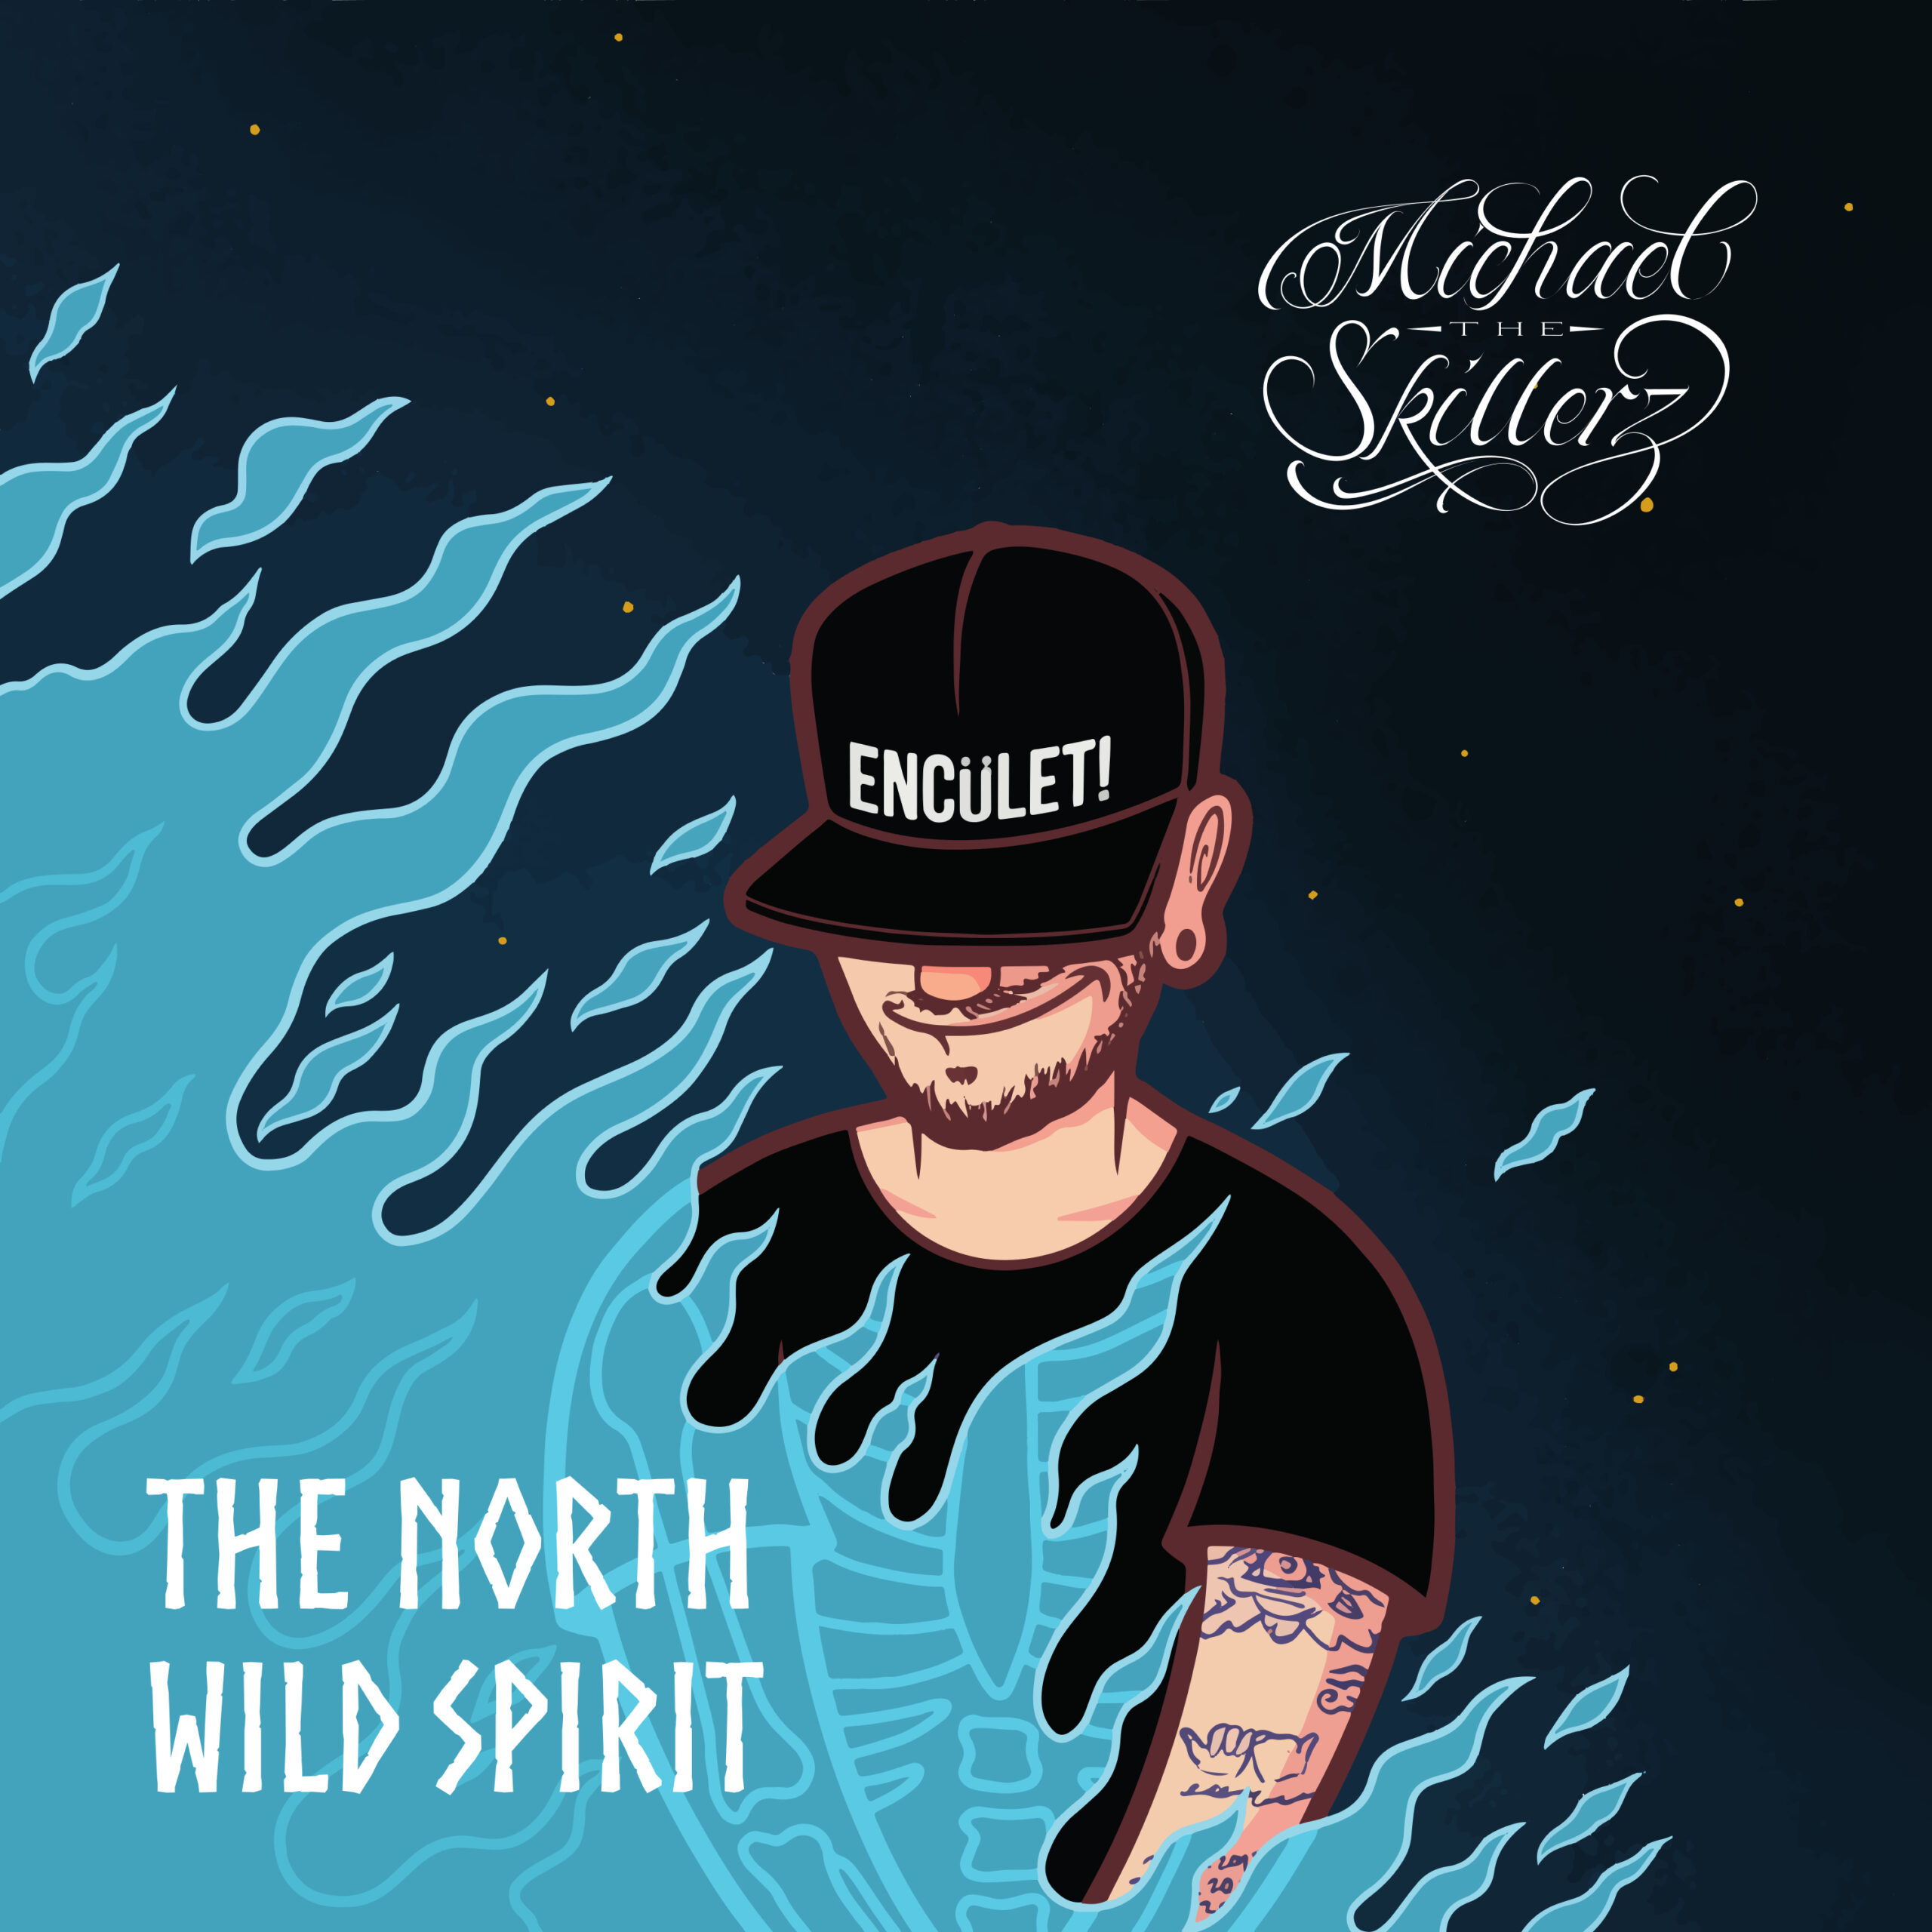 Scopri di più sull'articolo “The North Wild Spirit” è il primo album di Michael The Skillerz